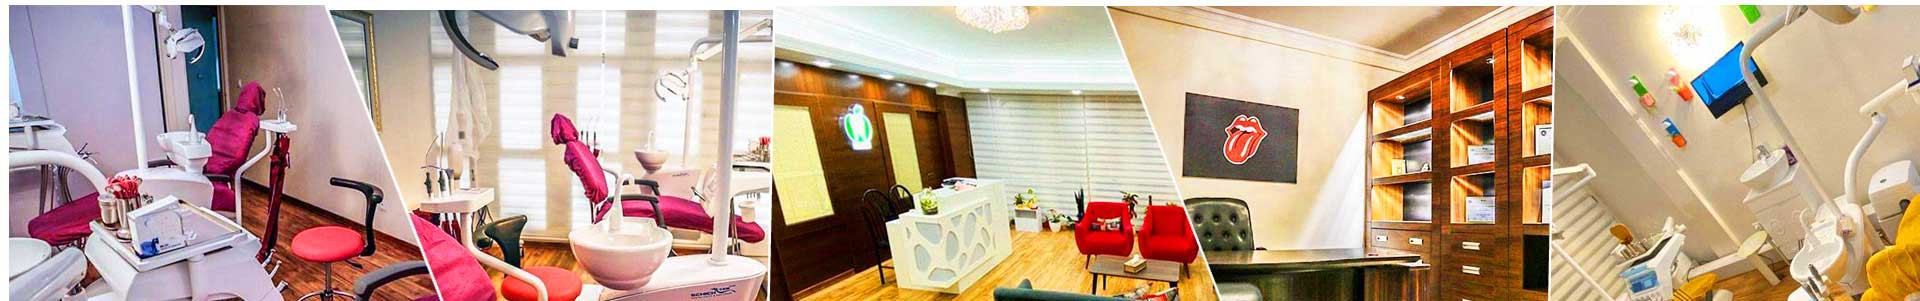 بهترین خرید مطب دندانپزشکی گودرزی تهران با بیشترین درصد تخفیف در قیمت - 58%